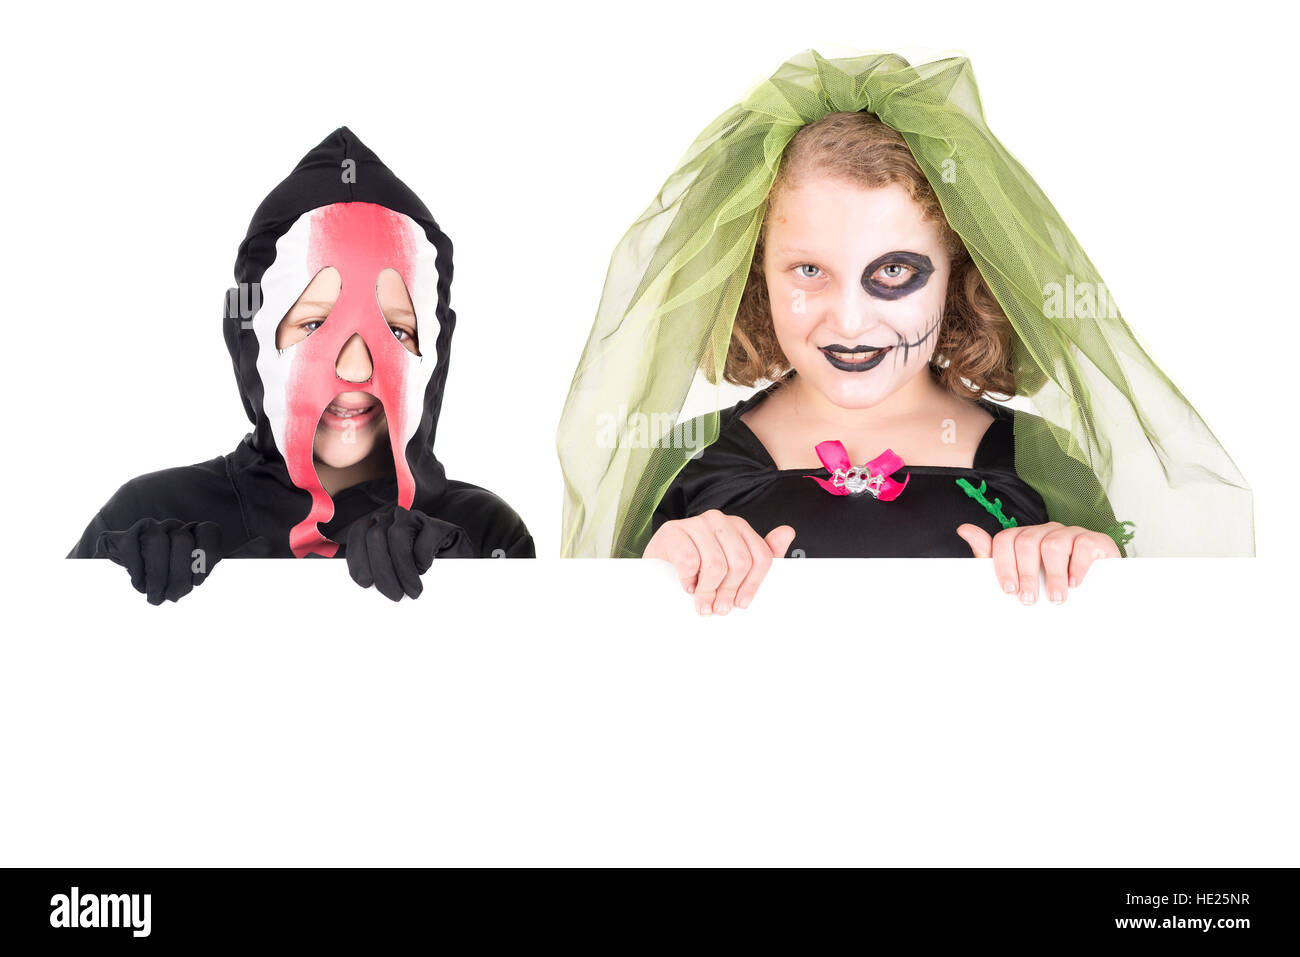 Kinder mit Gesicht malen und Halloween-Kostüme über eine weiße Tafel Stockfoto